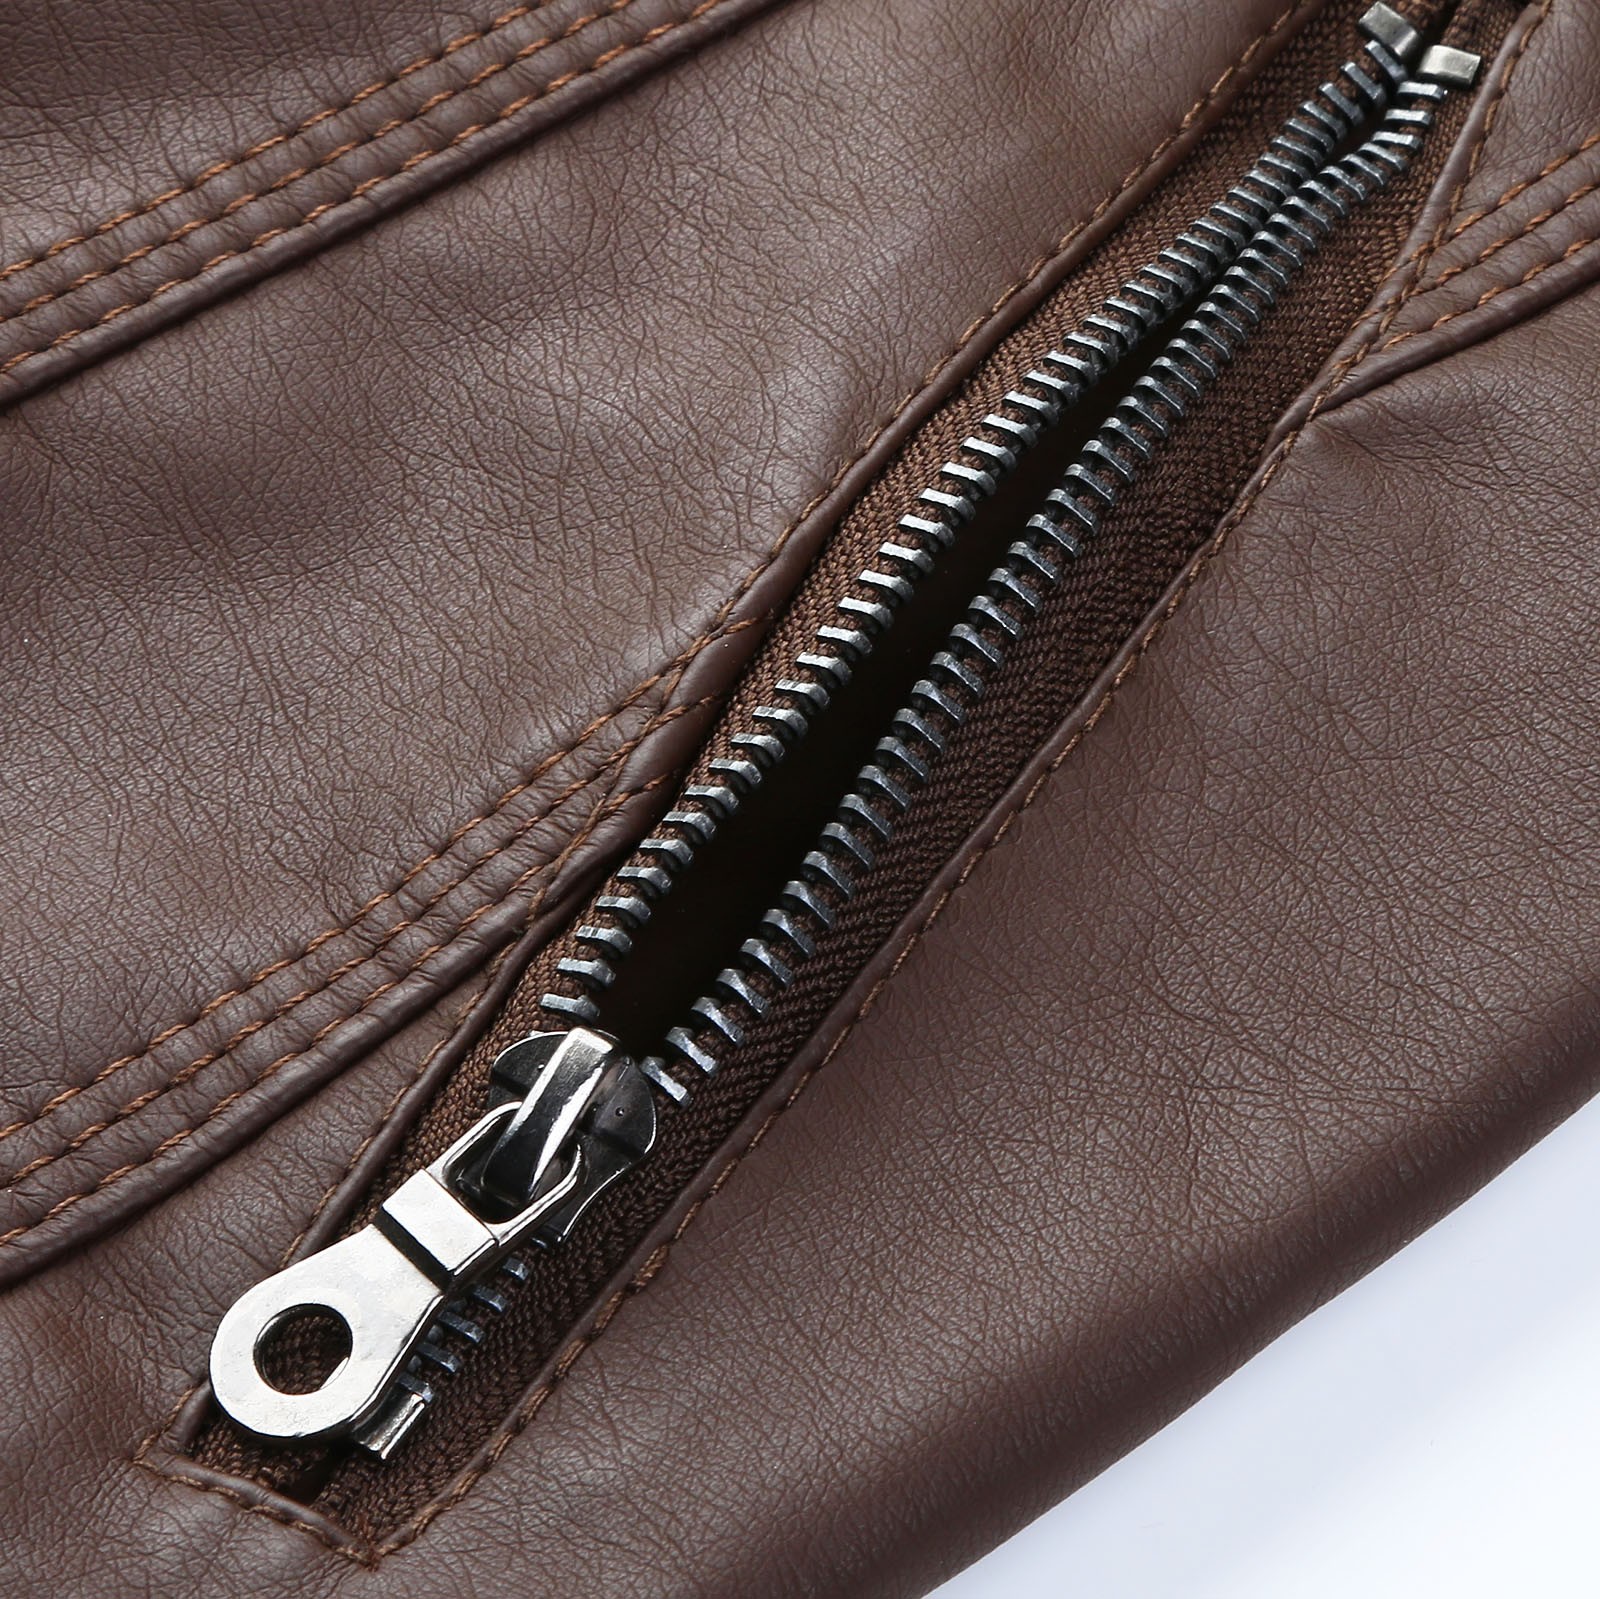 Bescita Women's Slim Leather Stand Collar Zip Motorcycle Suit Belt Coat Jacket Tops - image 4 of 5